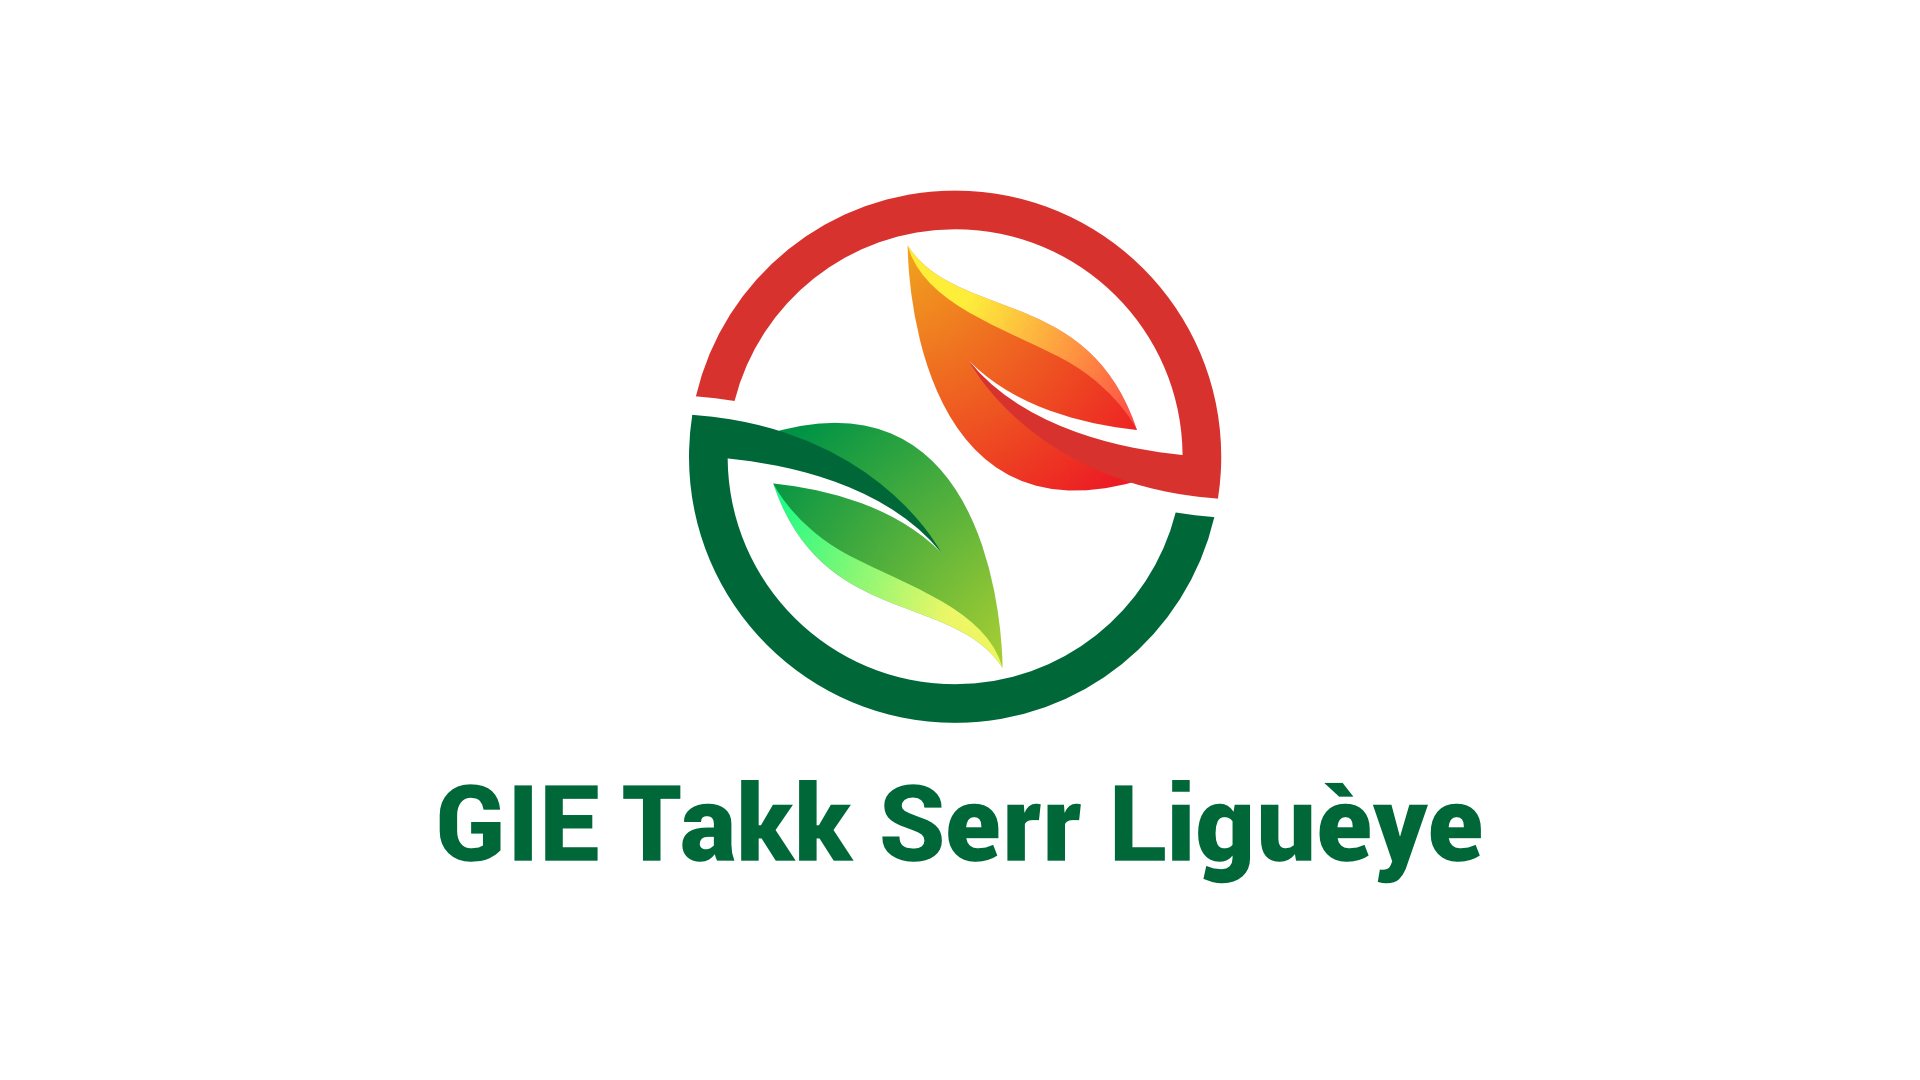 GIE Takk Serr Ligueye - Sabma Digital